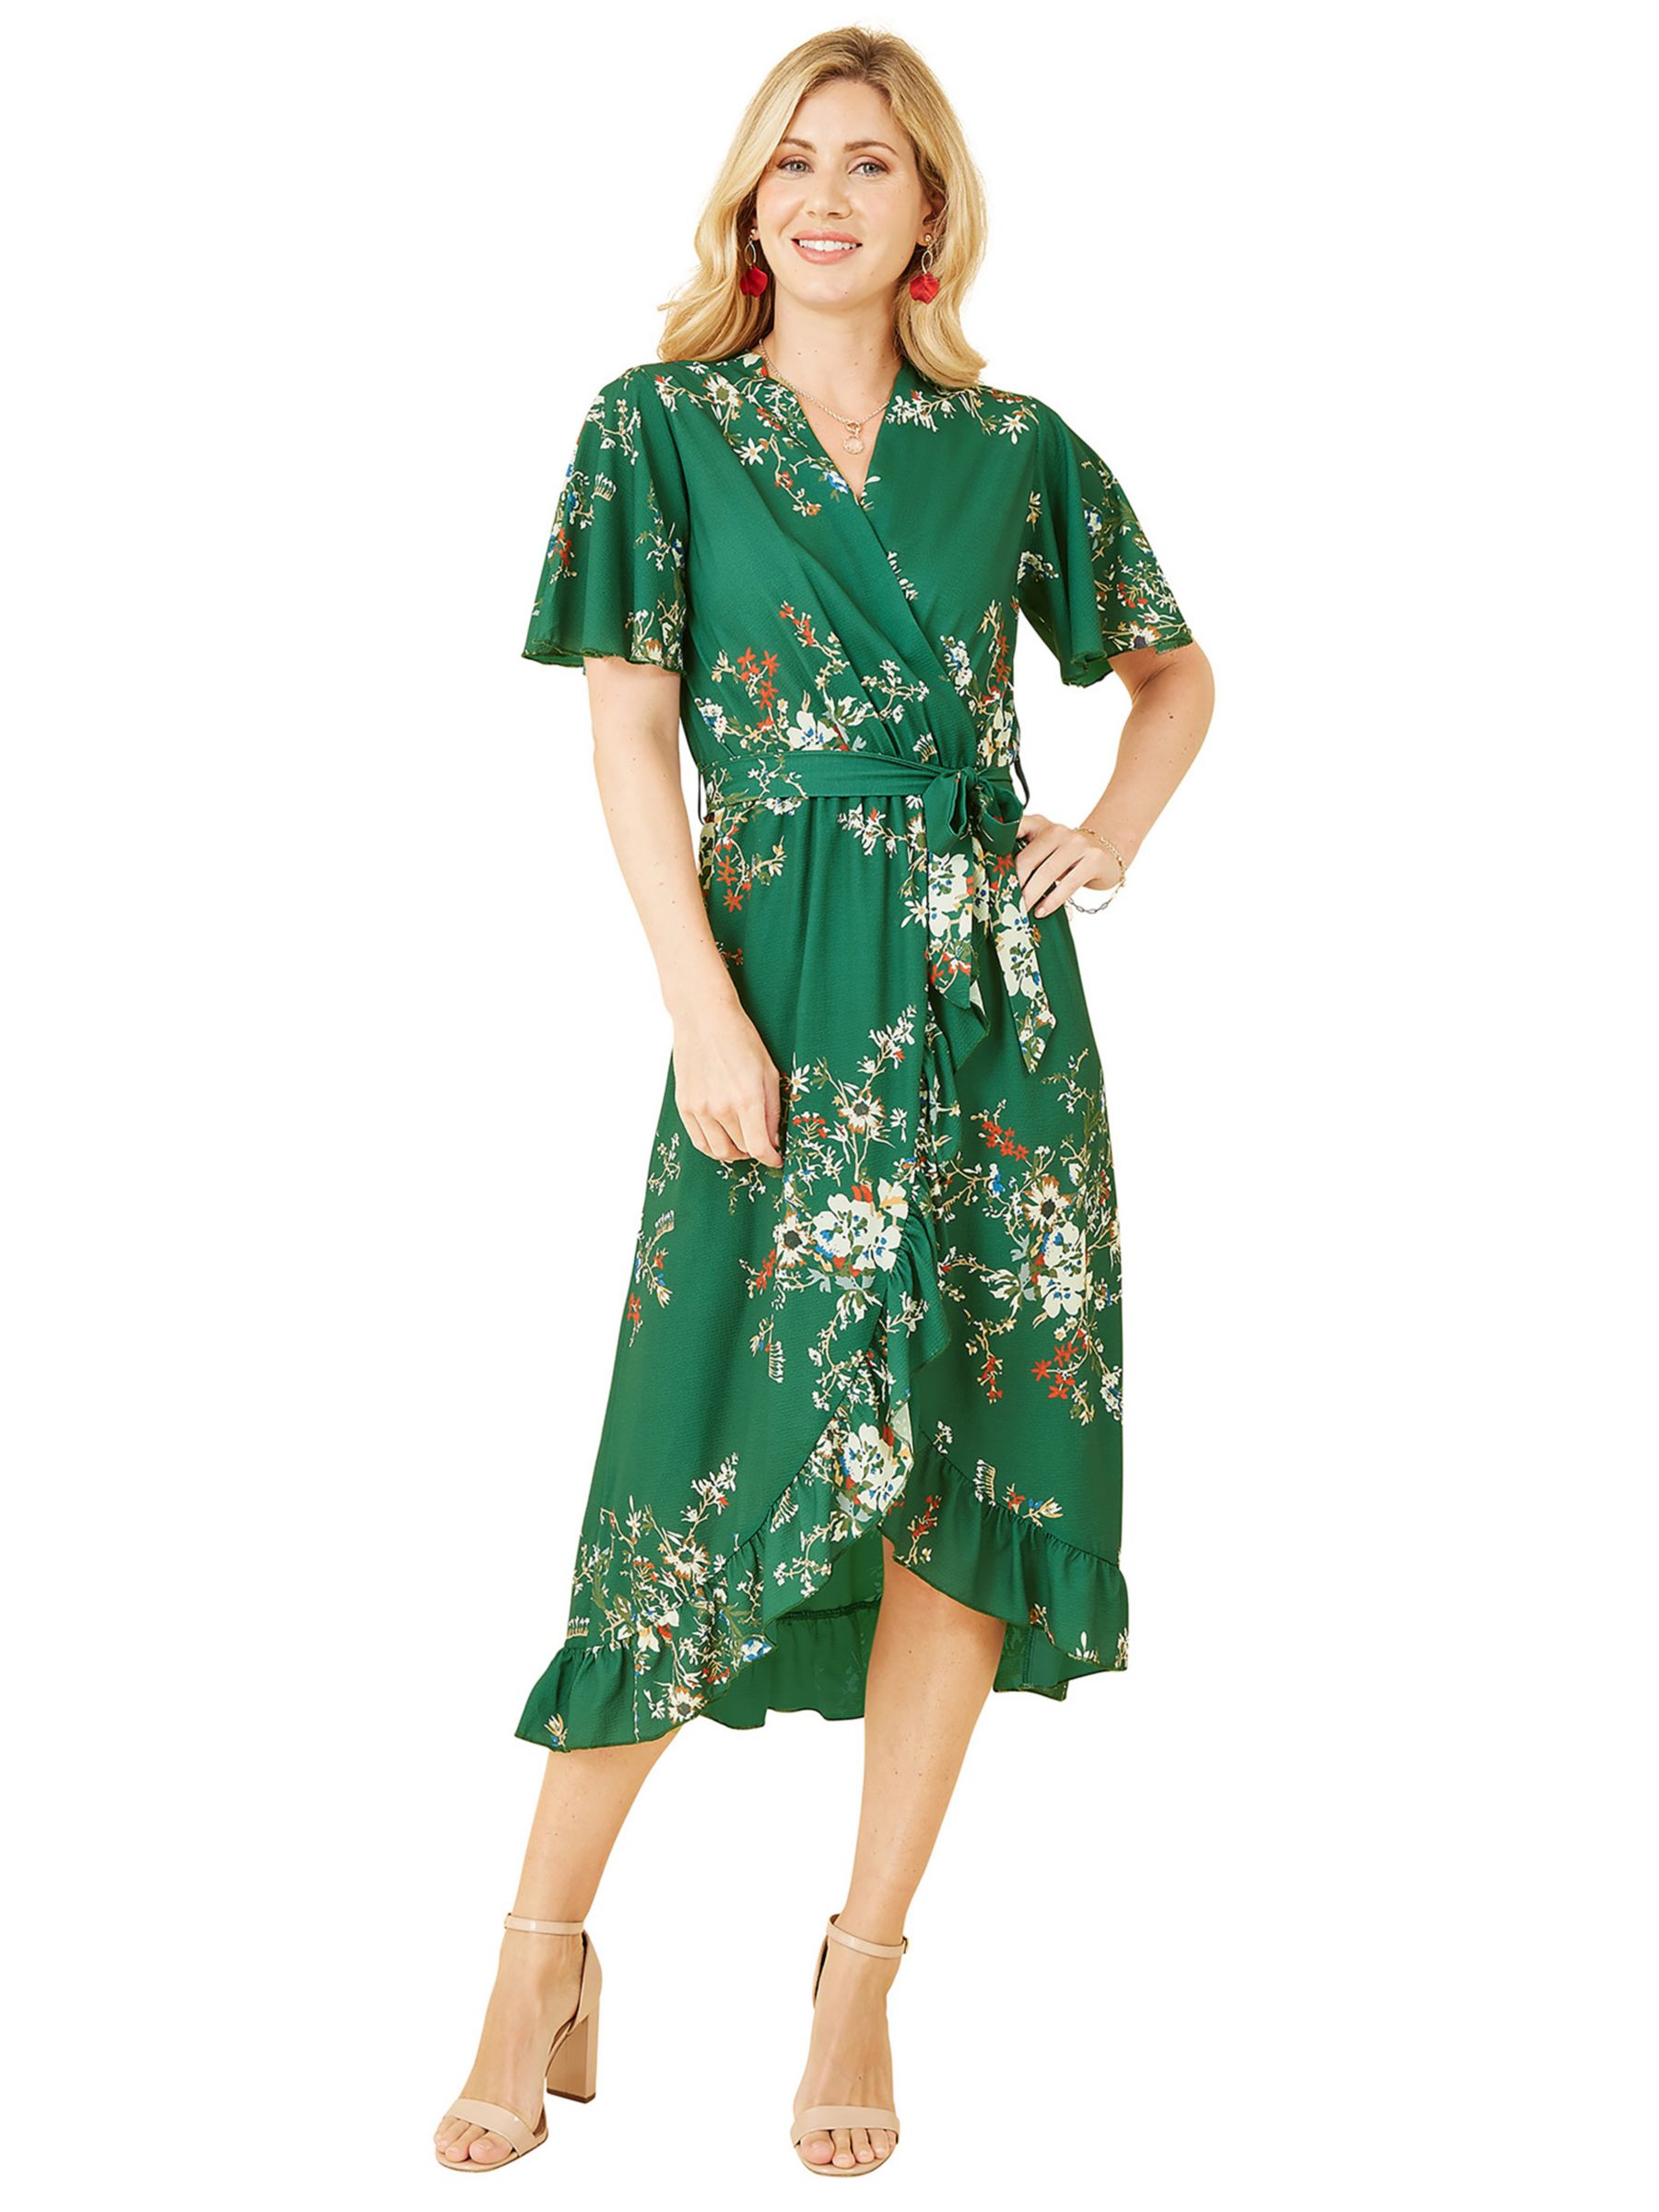 Mela London Floral Print Wrap Midi Dress, Green, 8